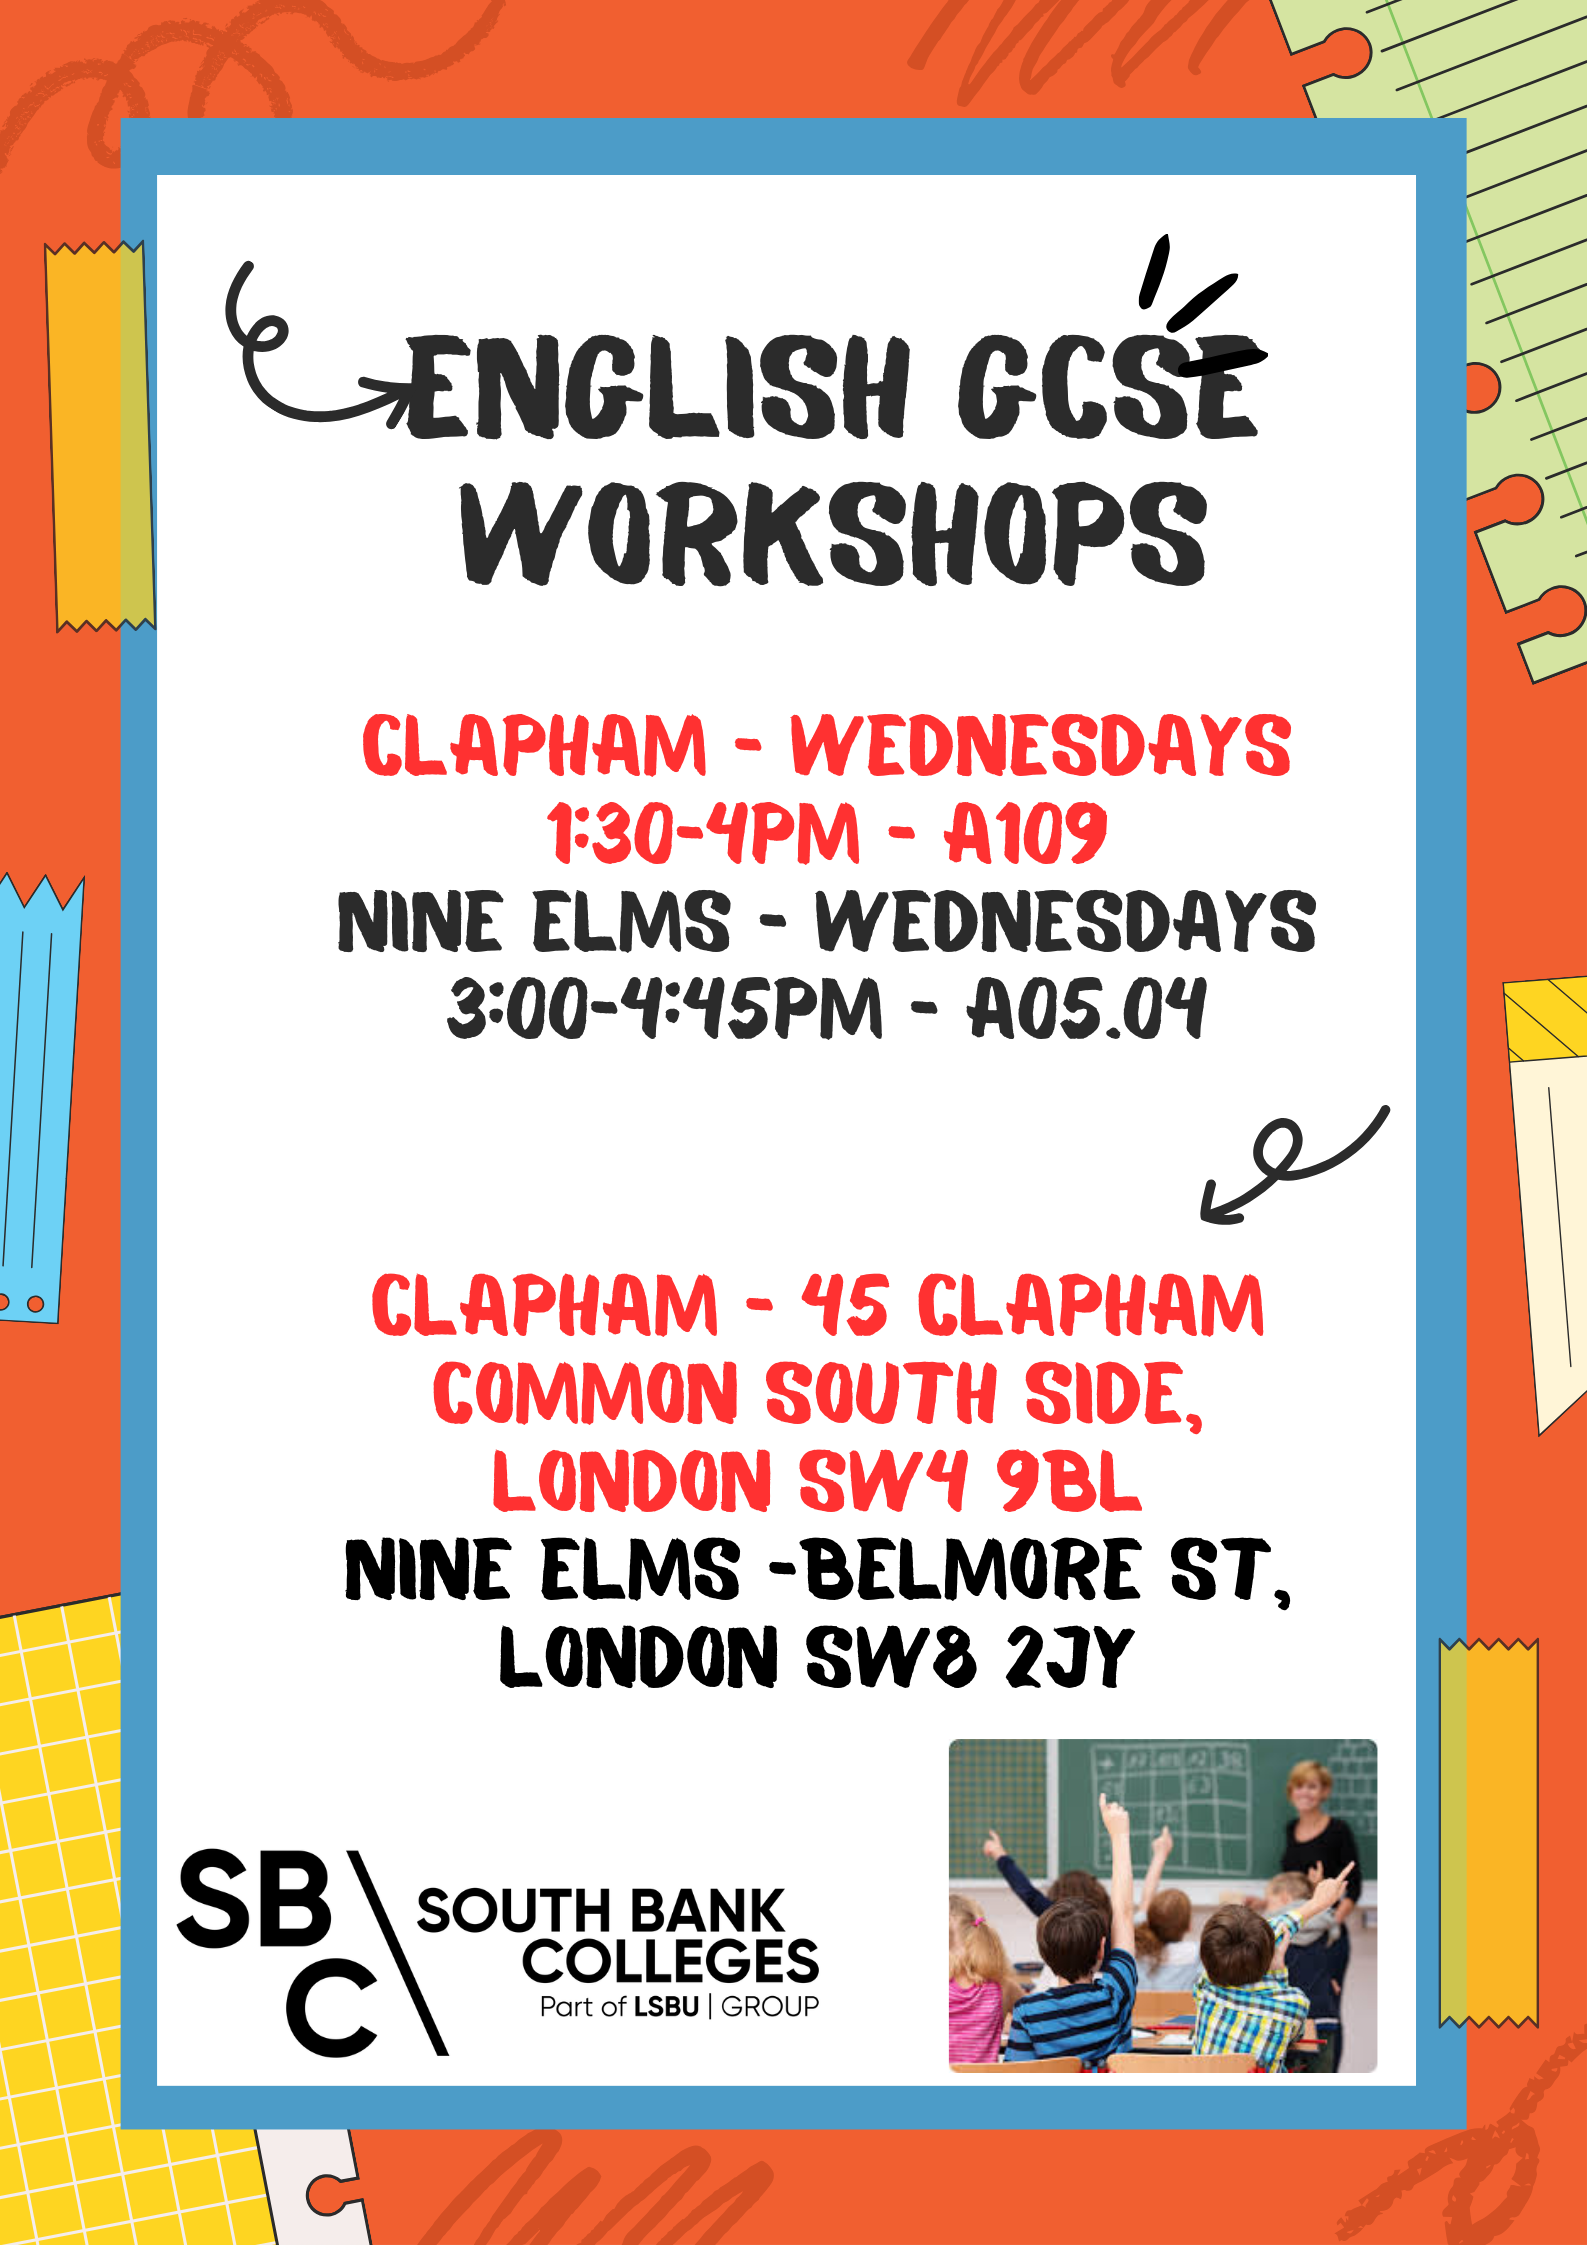 GCSE workshops